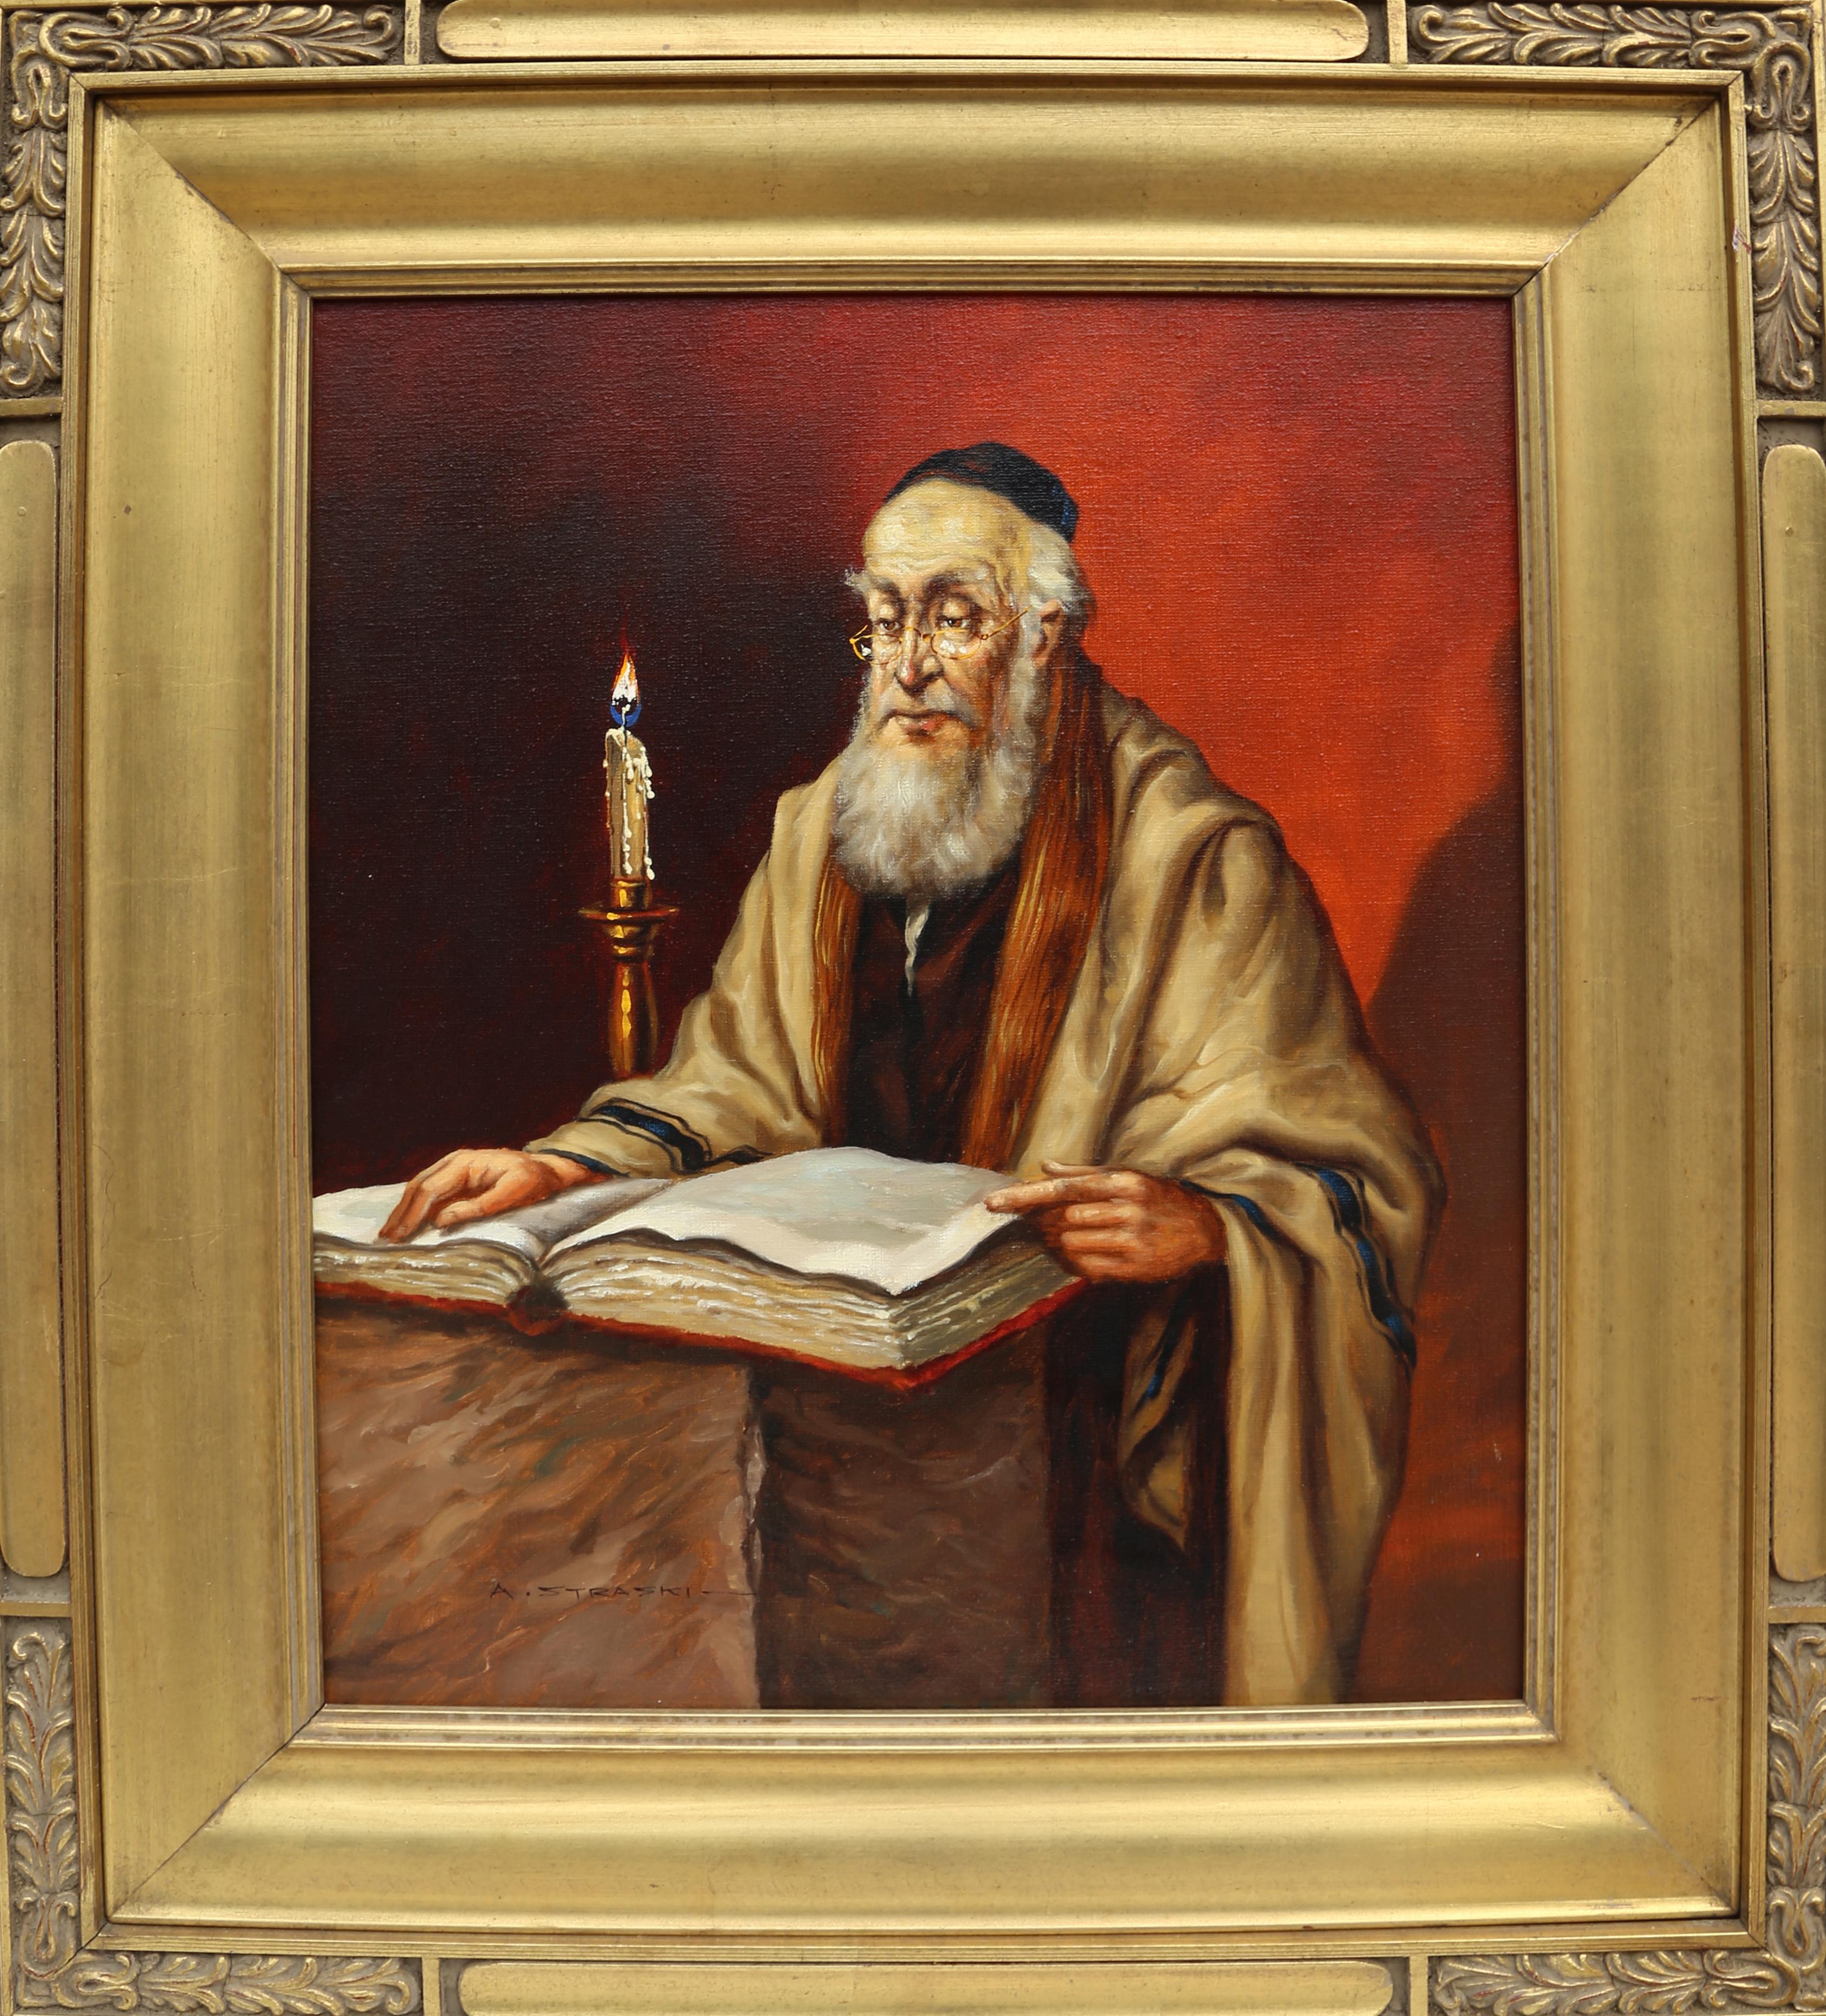 Lecture rabbinique à la bougie (6-F)
Abraham Straski, polonais (1903-1987)
Date : 1959
Huile sur toile, signée et datée
Taille : 58,42 x 48,26 cm (23 x 19 in.)
Taille du cadre : 33.5 x 29.5 pouces